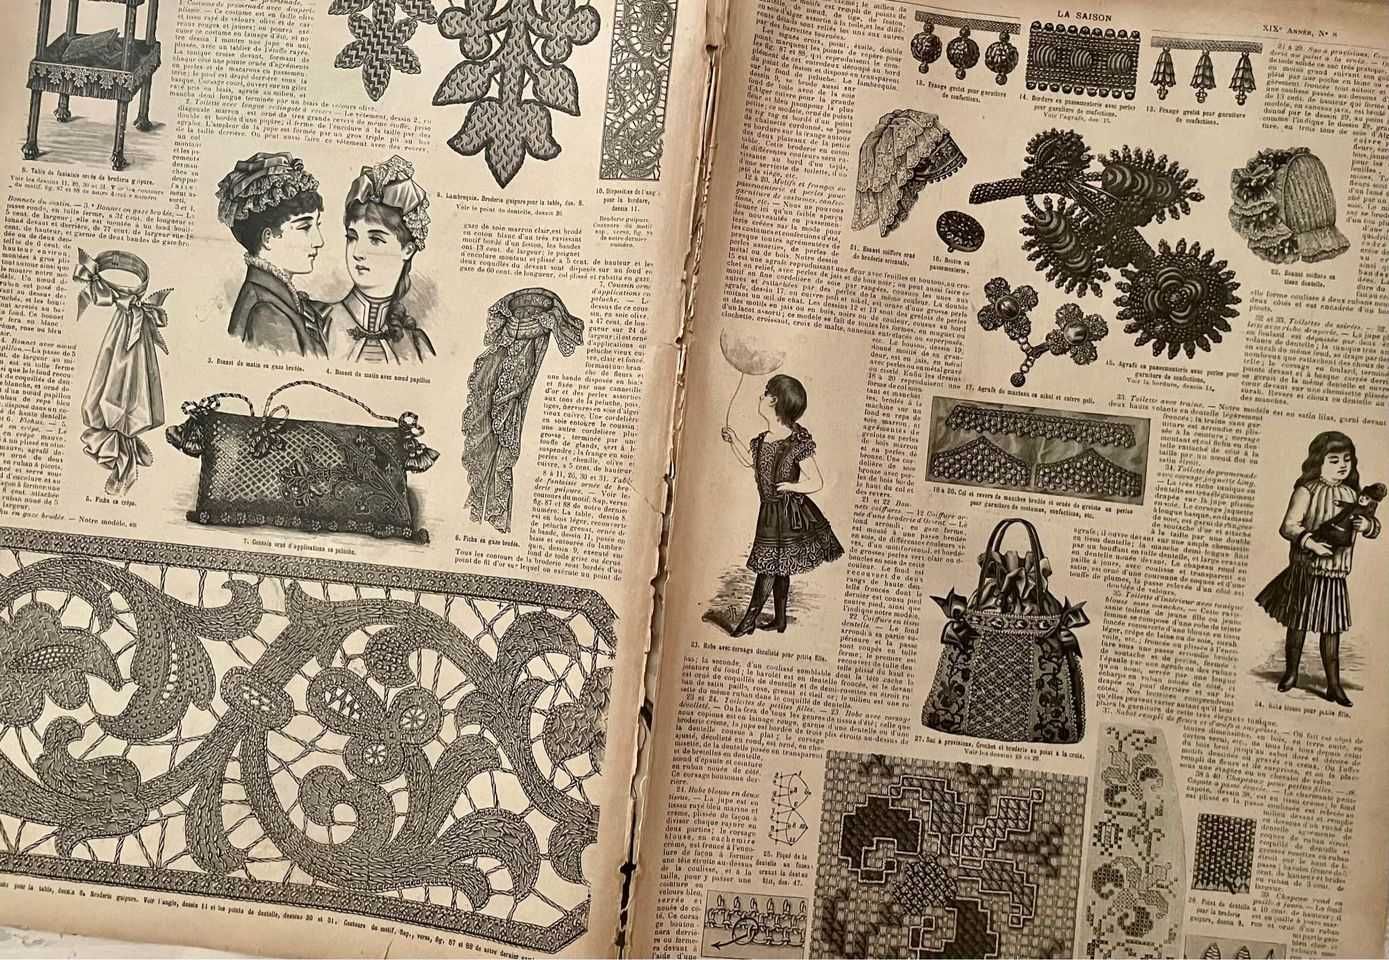 La saison, Journal illustré des Dames, 1885-86